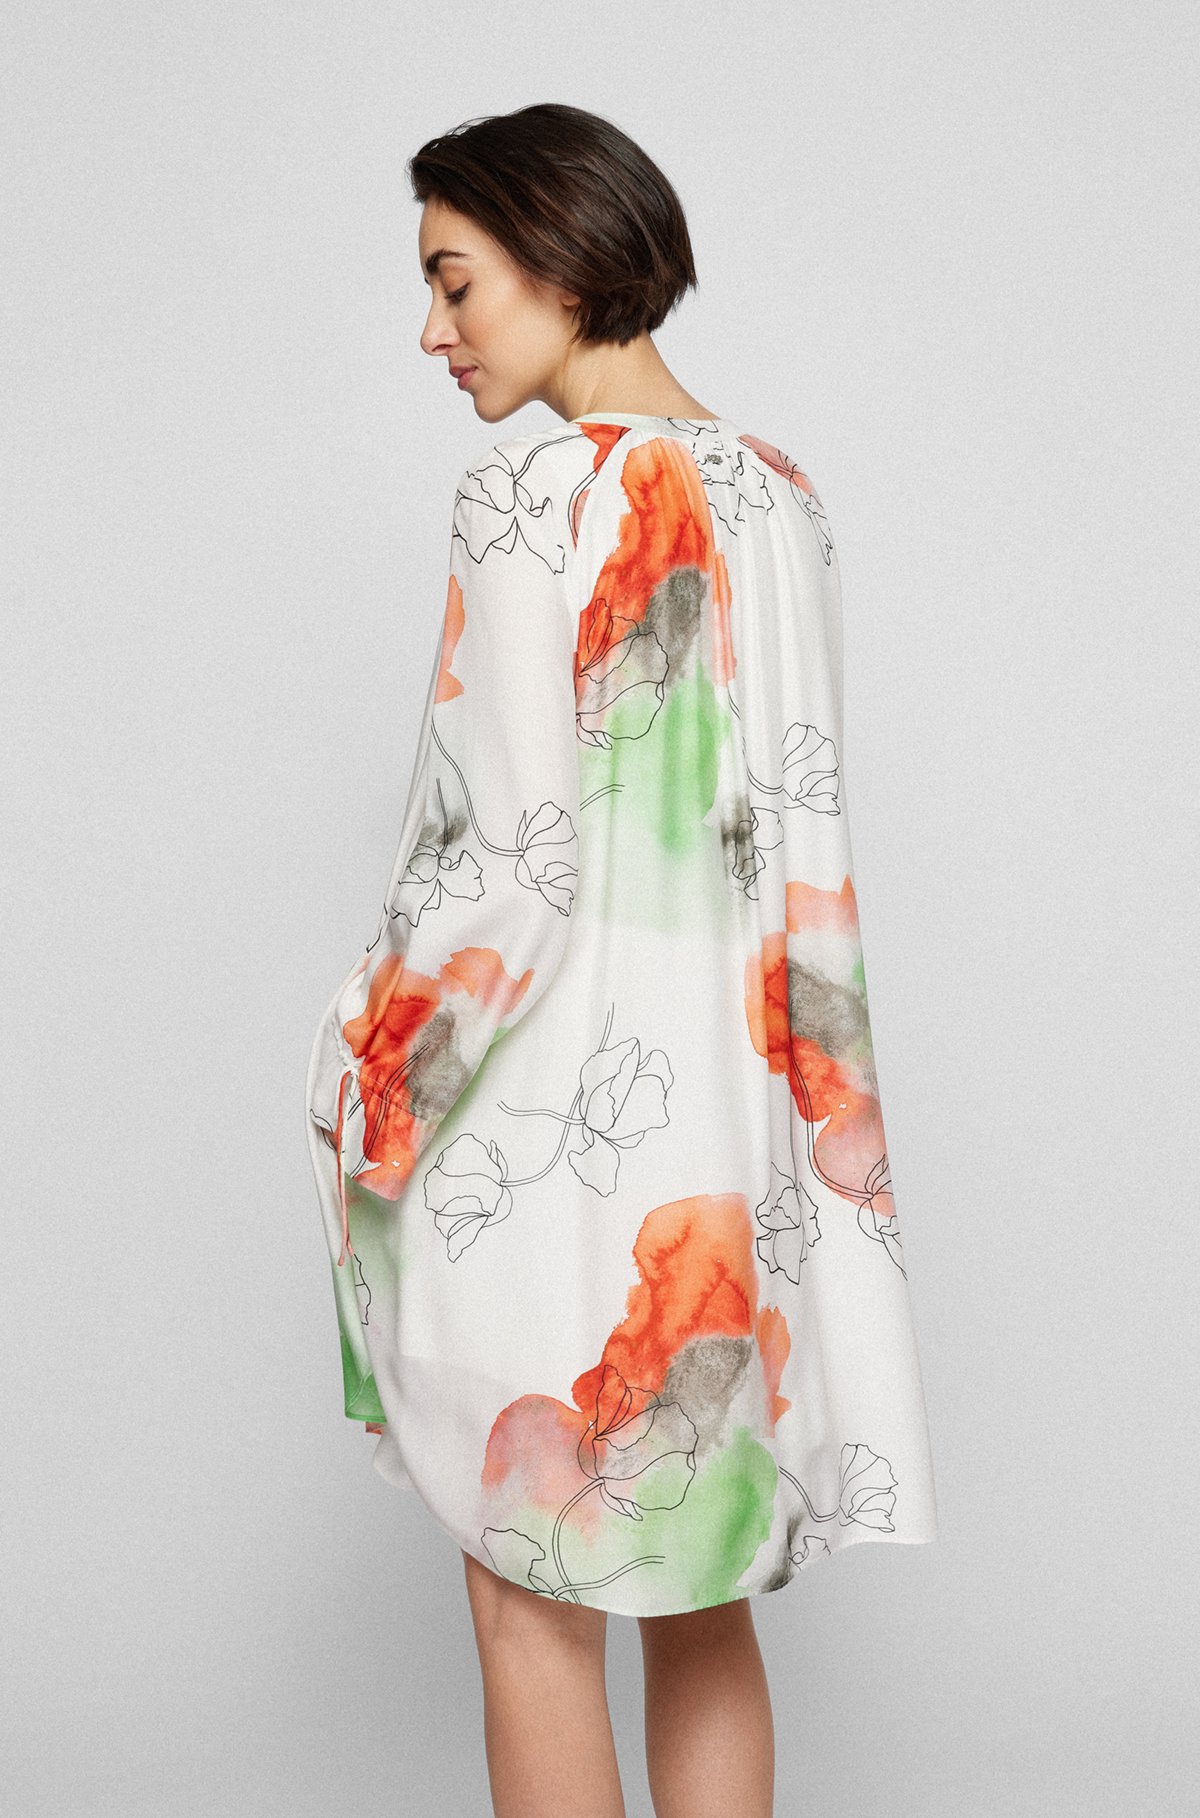 Robe Relaxed Fit en tissu à imprimé floral, avec de la soie, Fantaisie